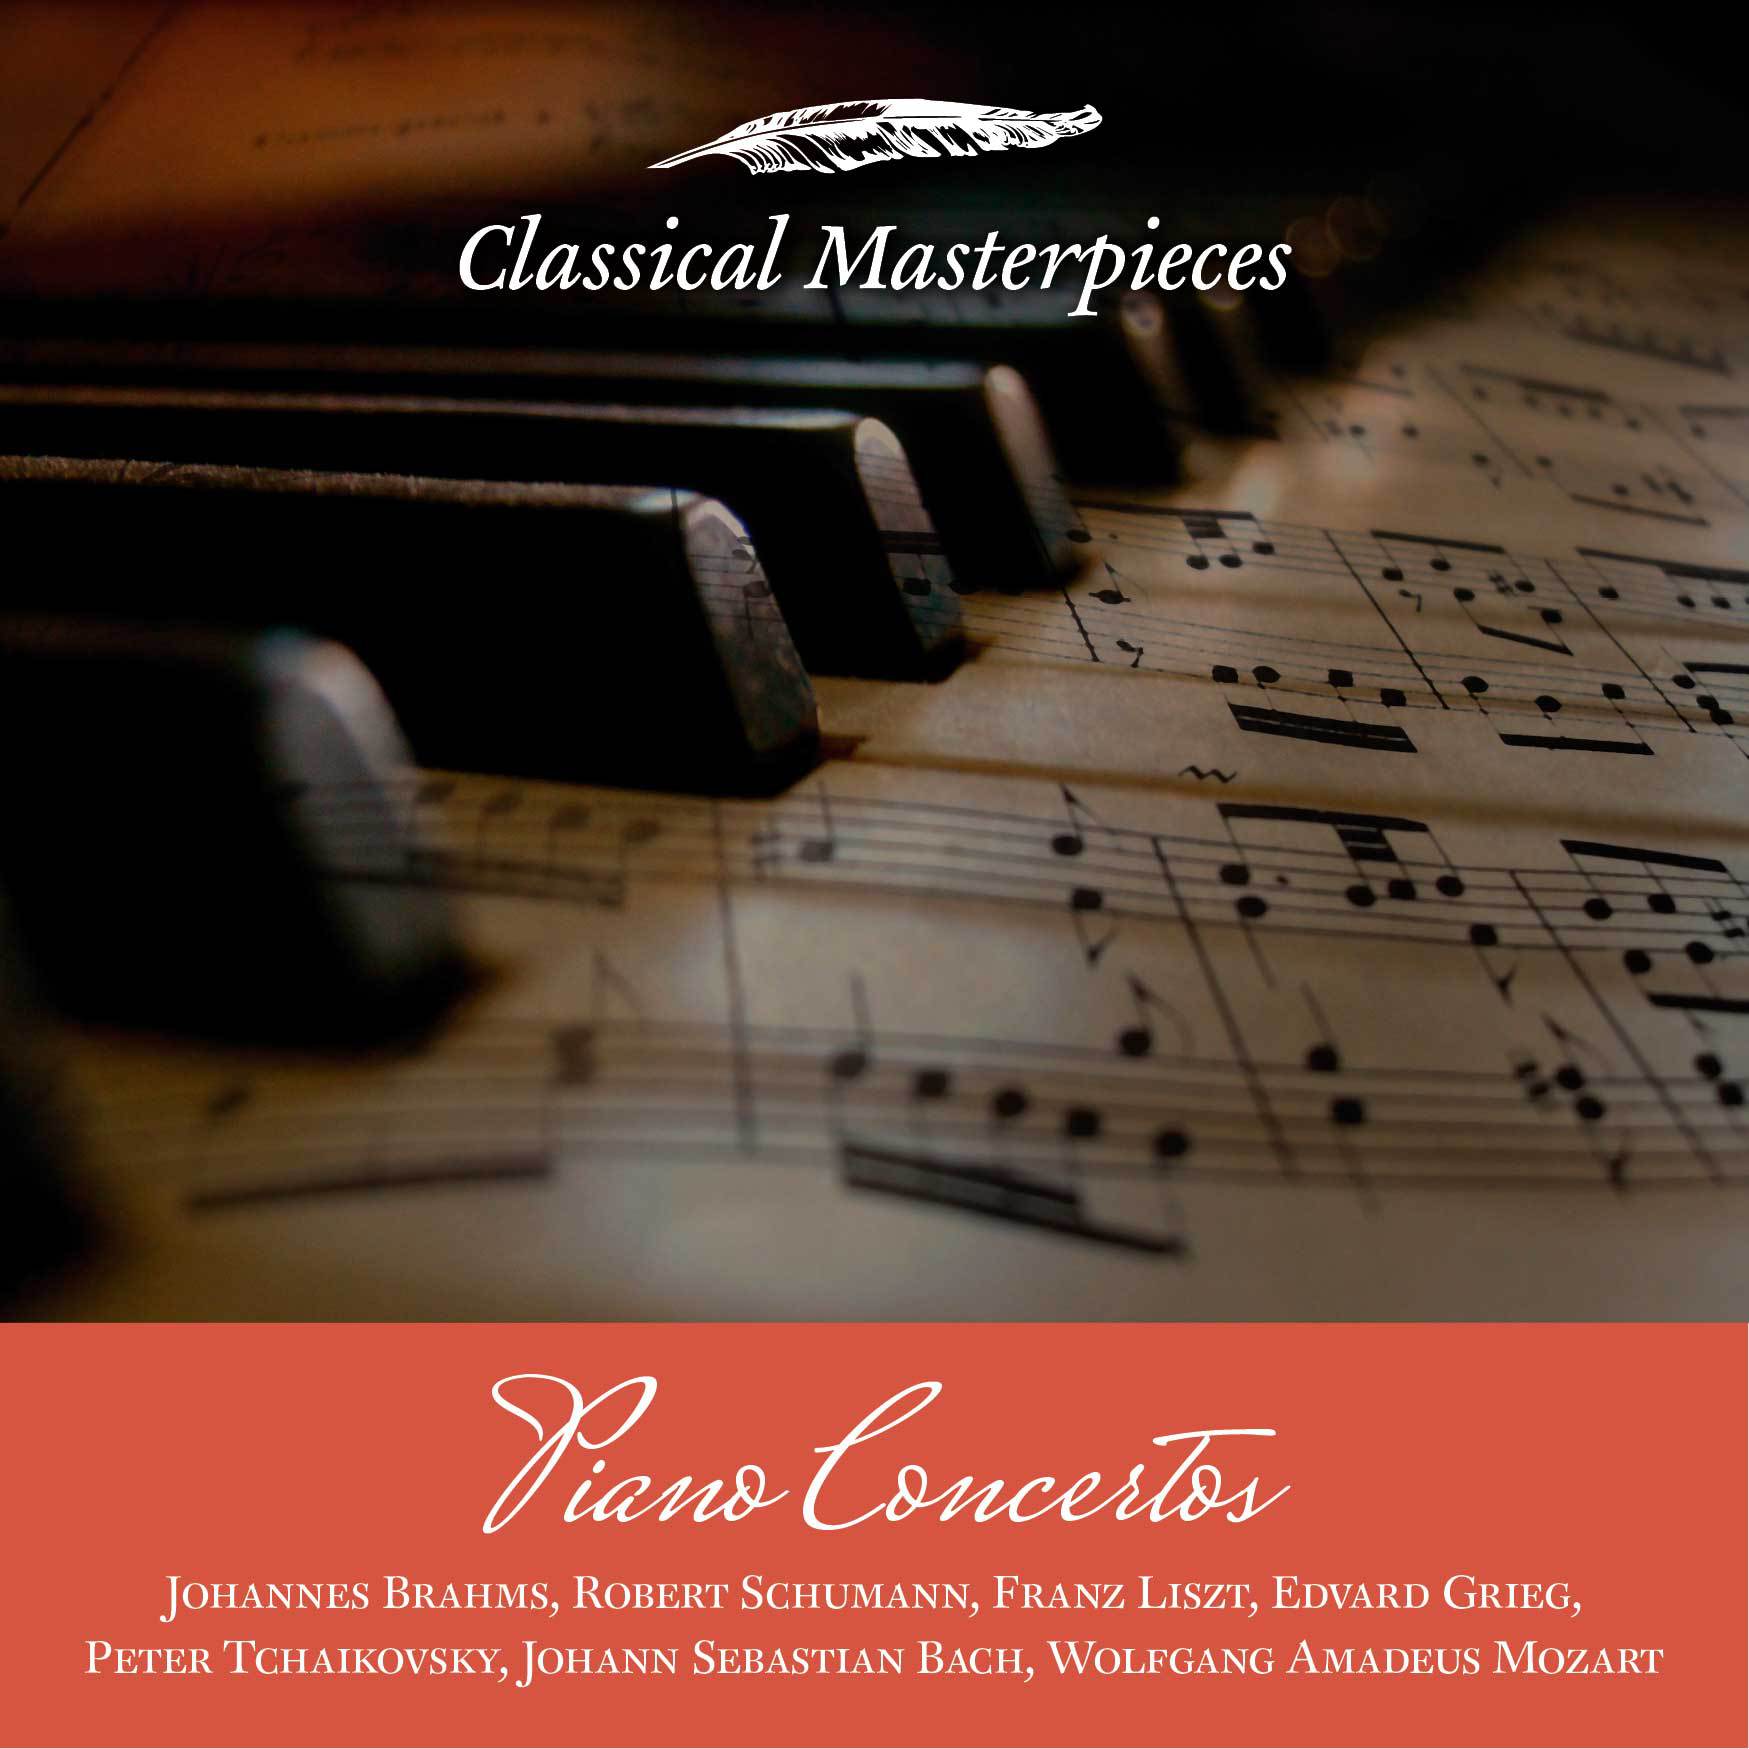 Piano Concerto in A Minor, op. 16: Allegro molto moderato